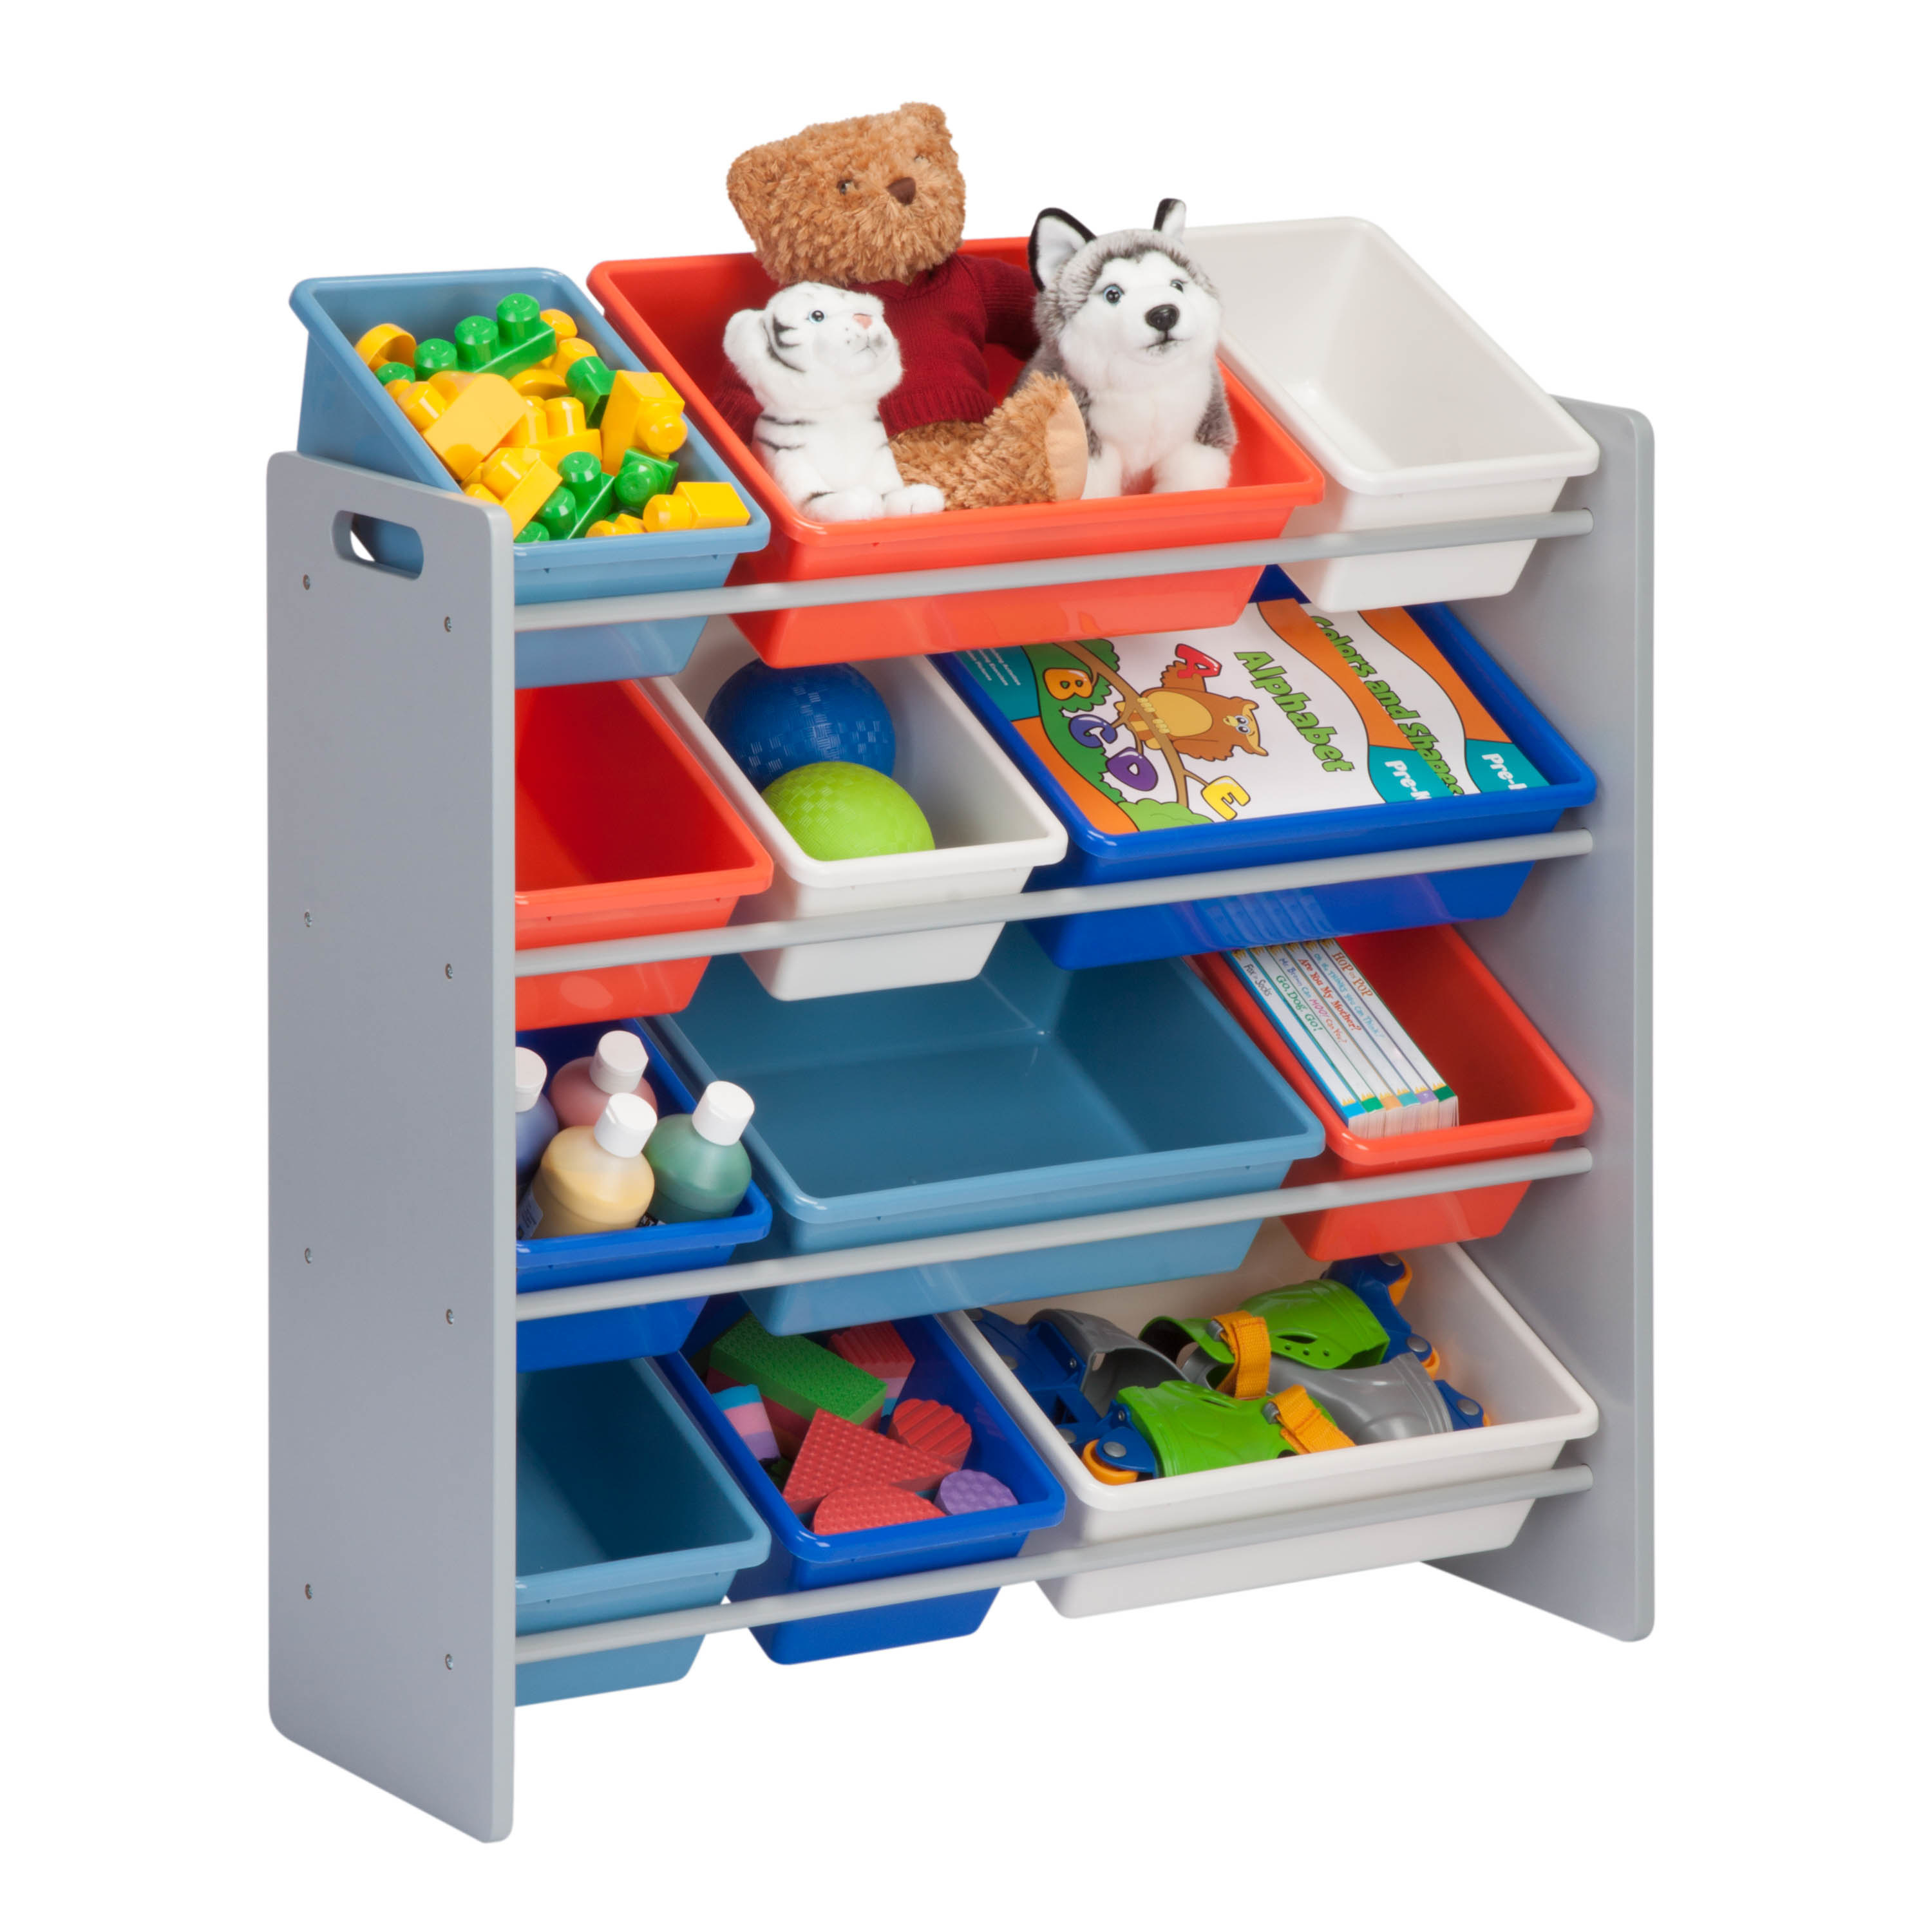 Kids toy storage bins 